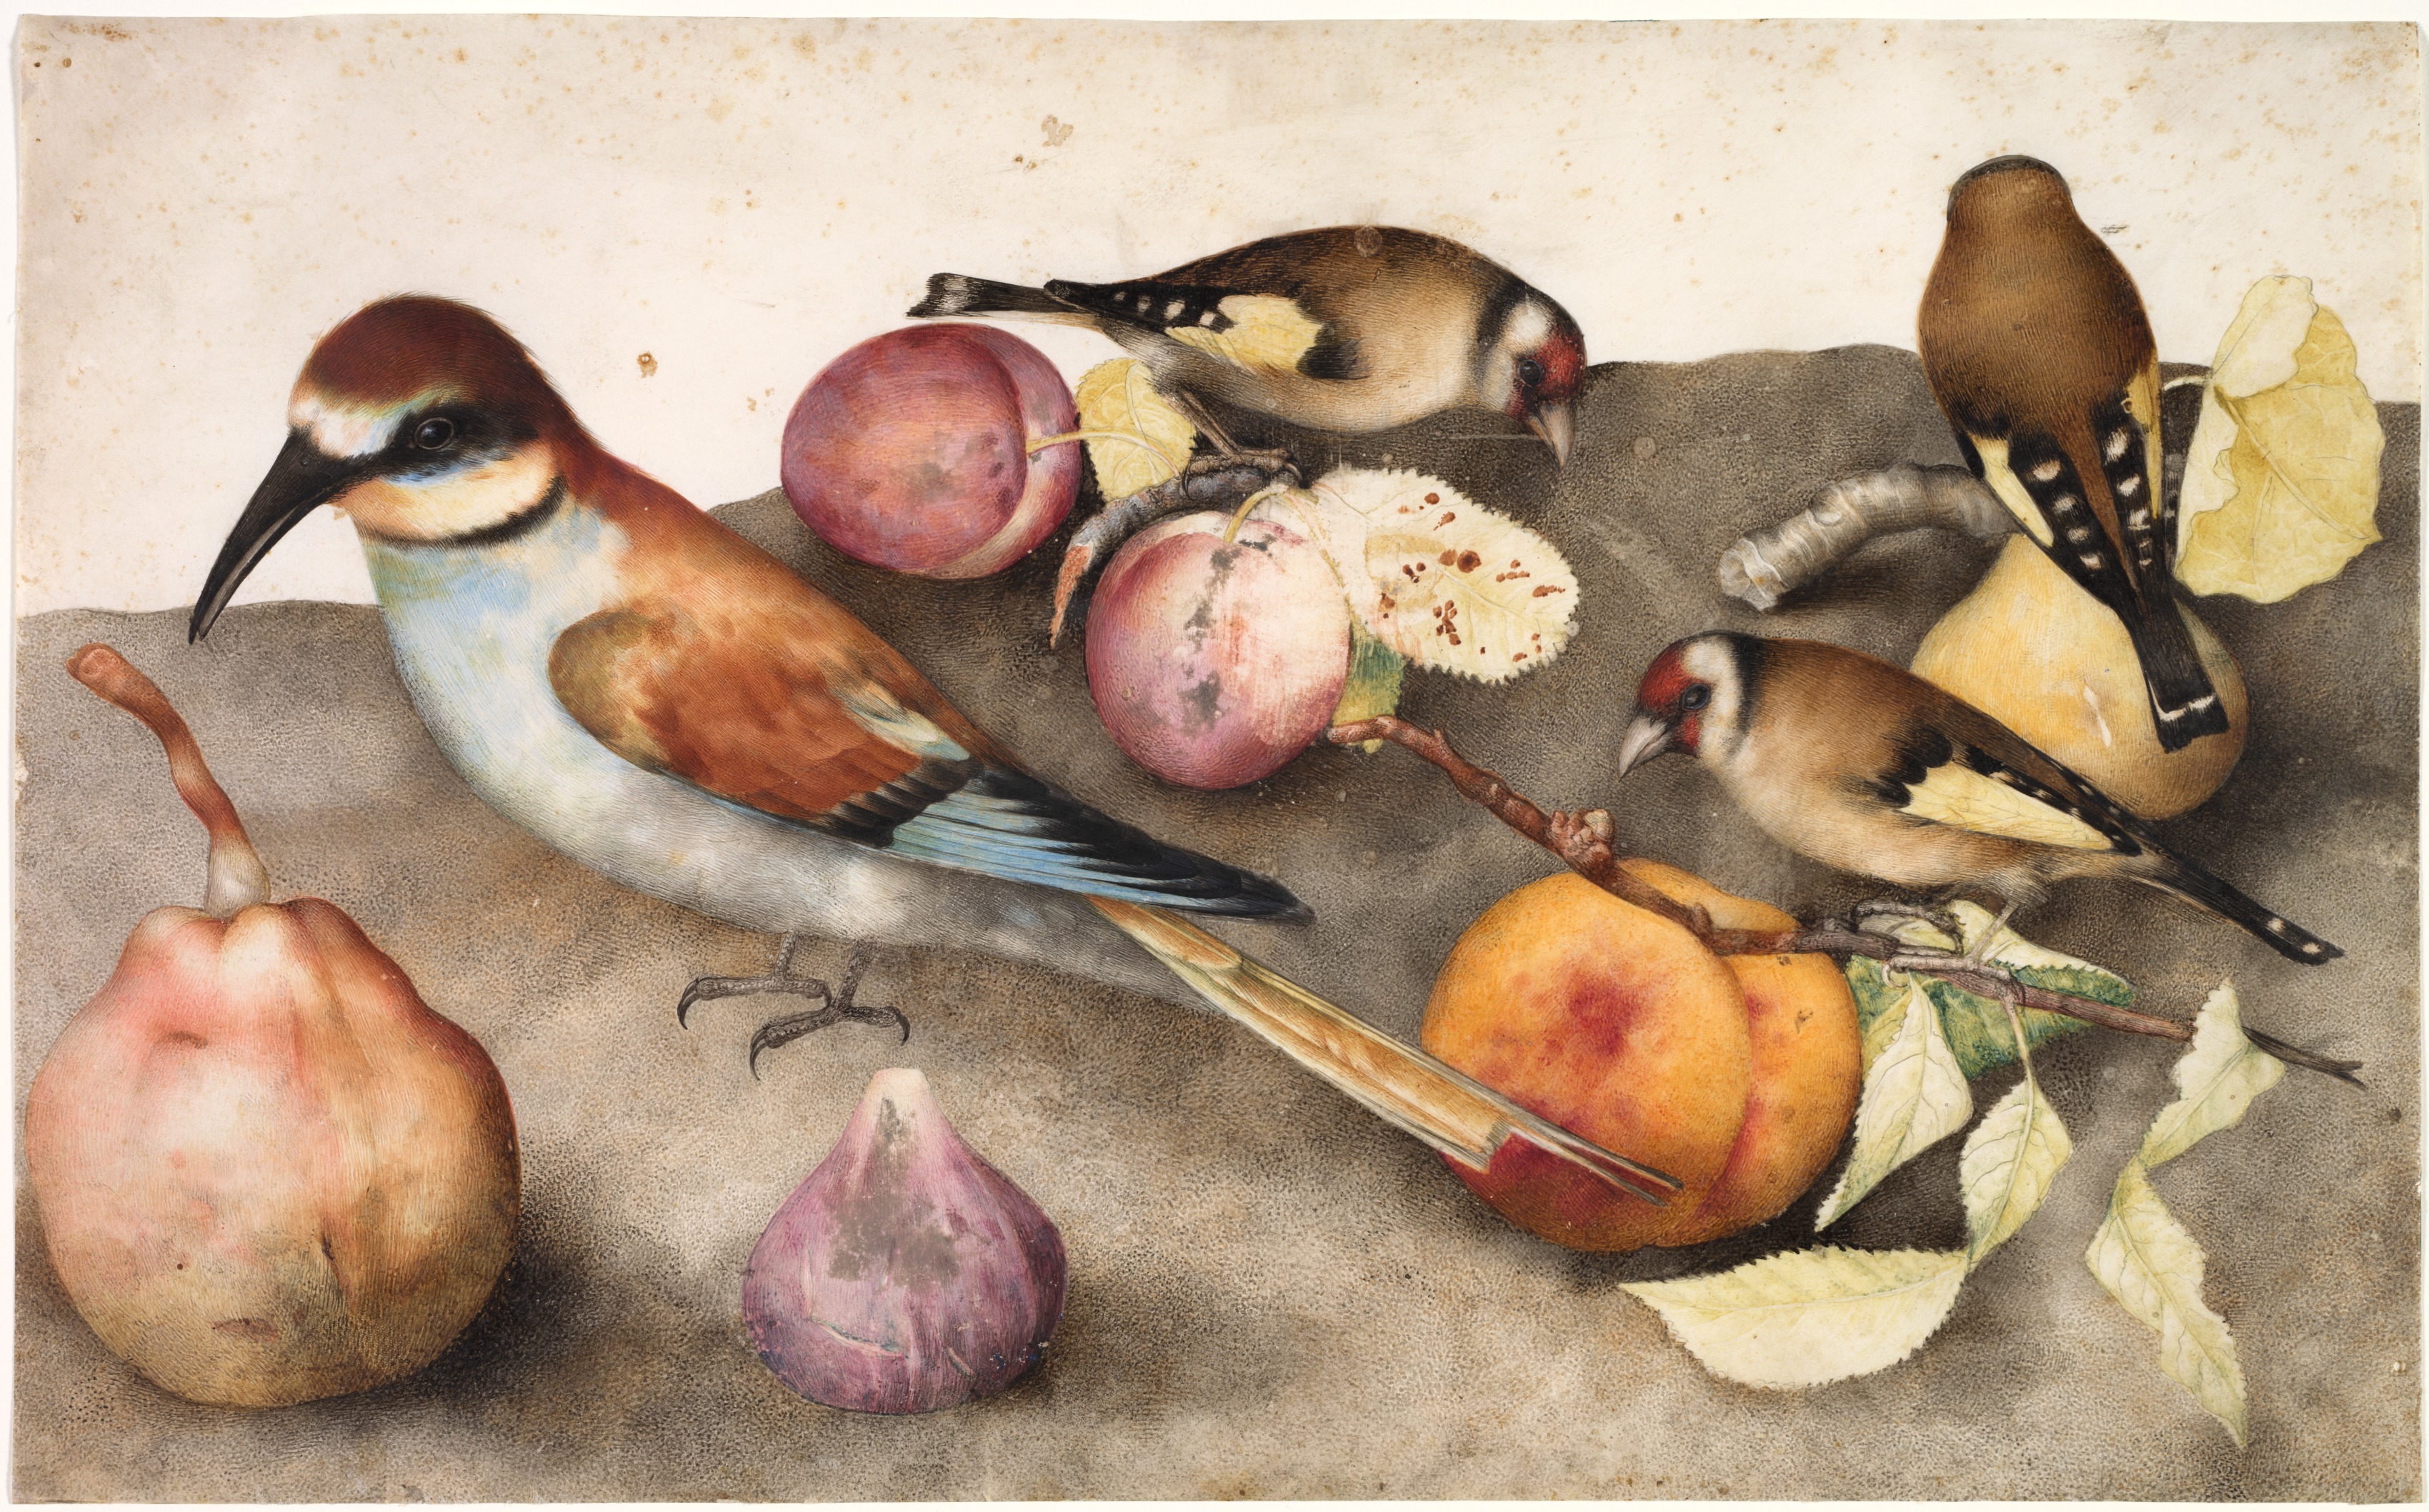 لوحة مع الطيور والفواكه by Giovanna Garzoni - 17th century - 25.7 x 41.6 cm 